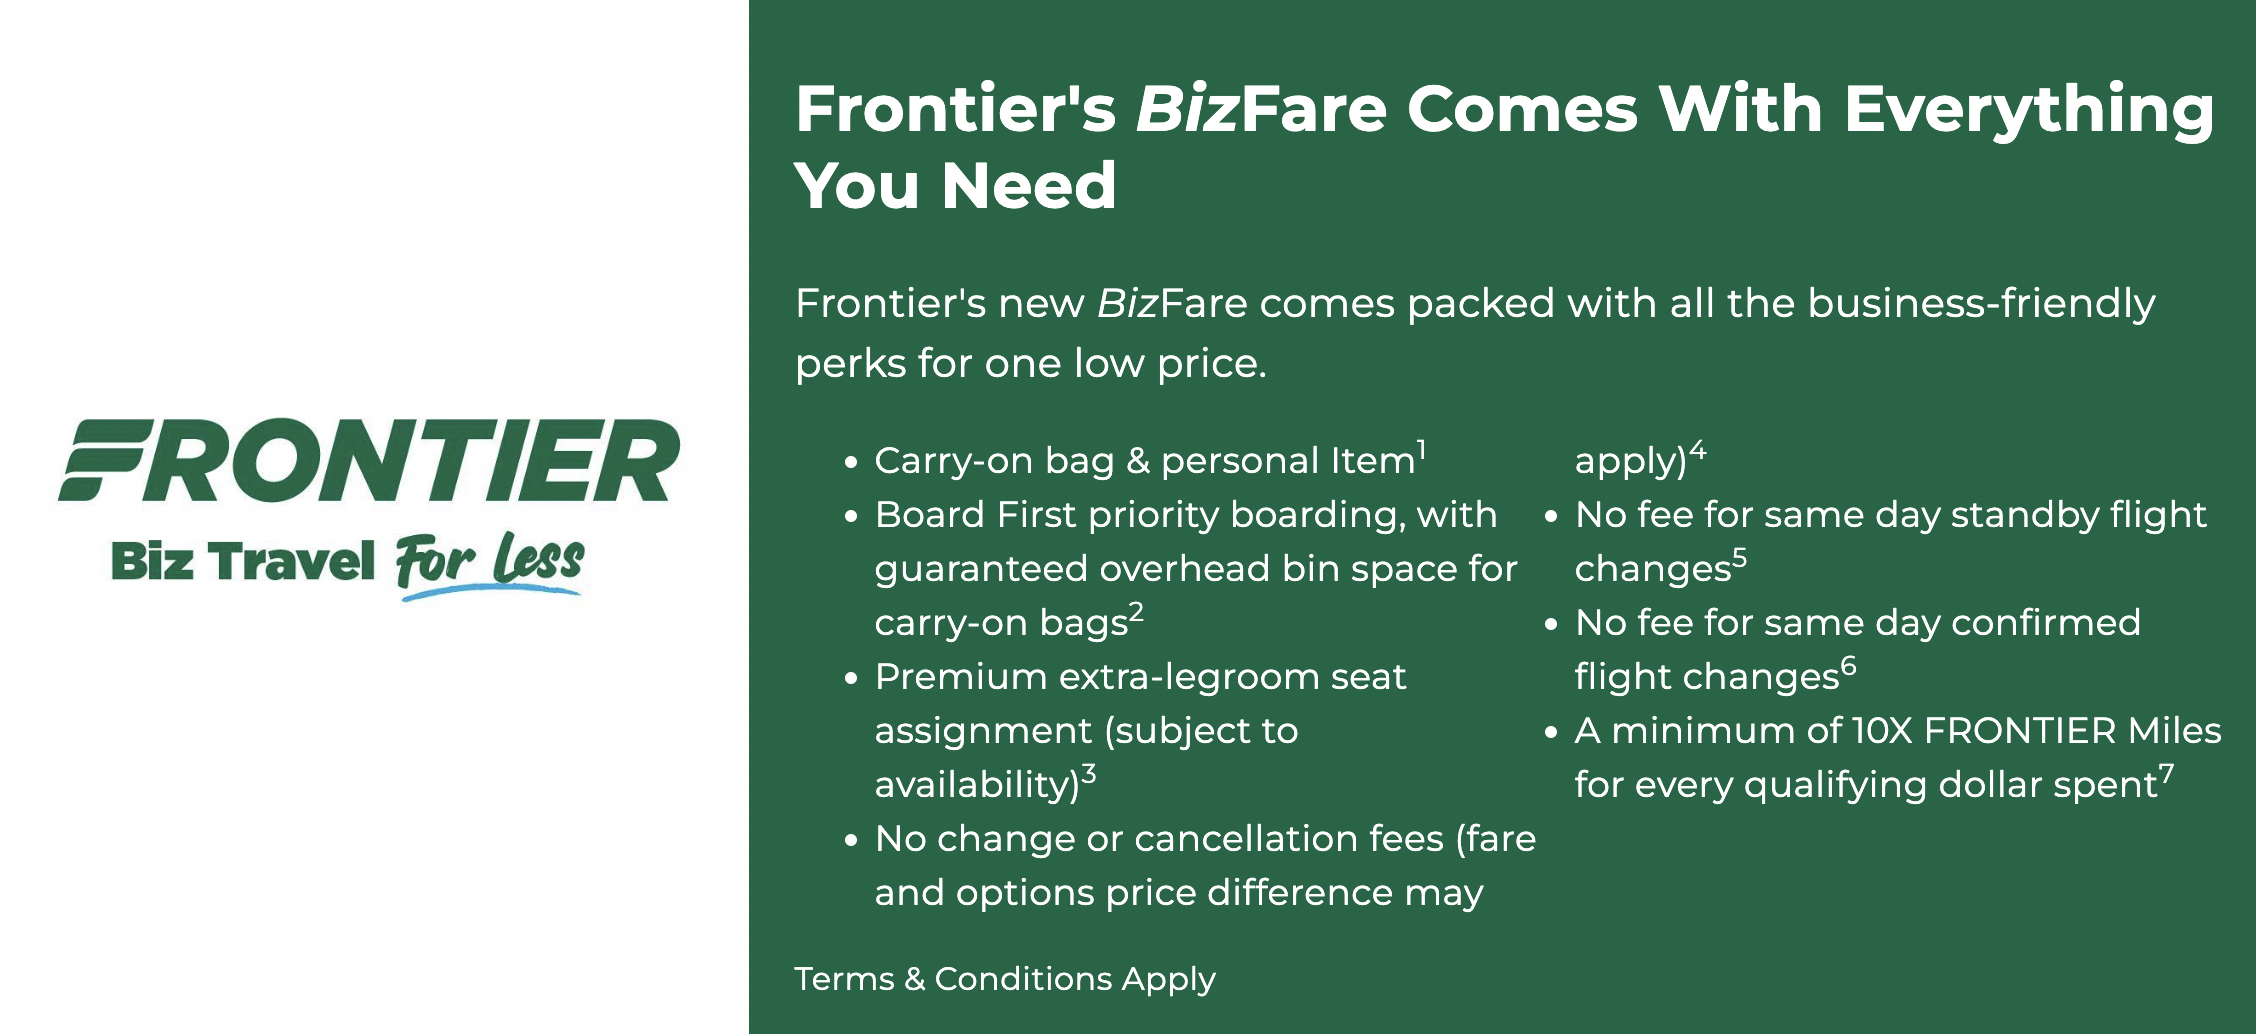 Frontier BizFare